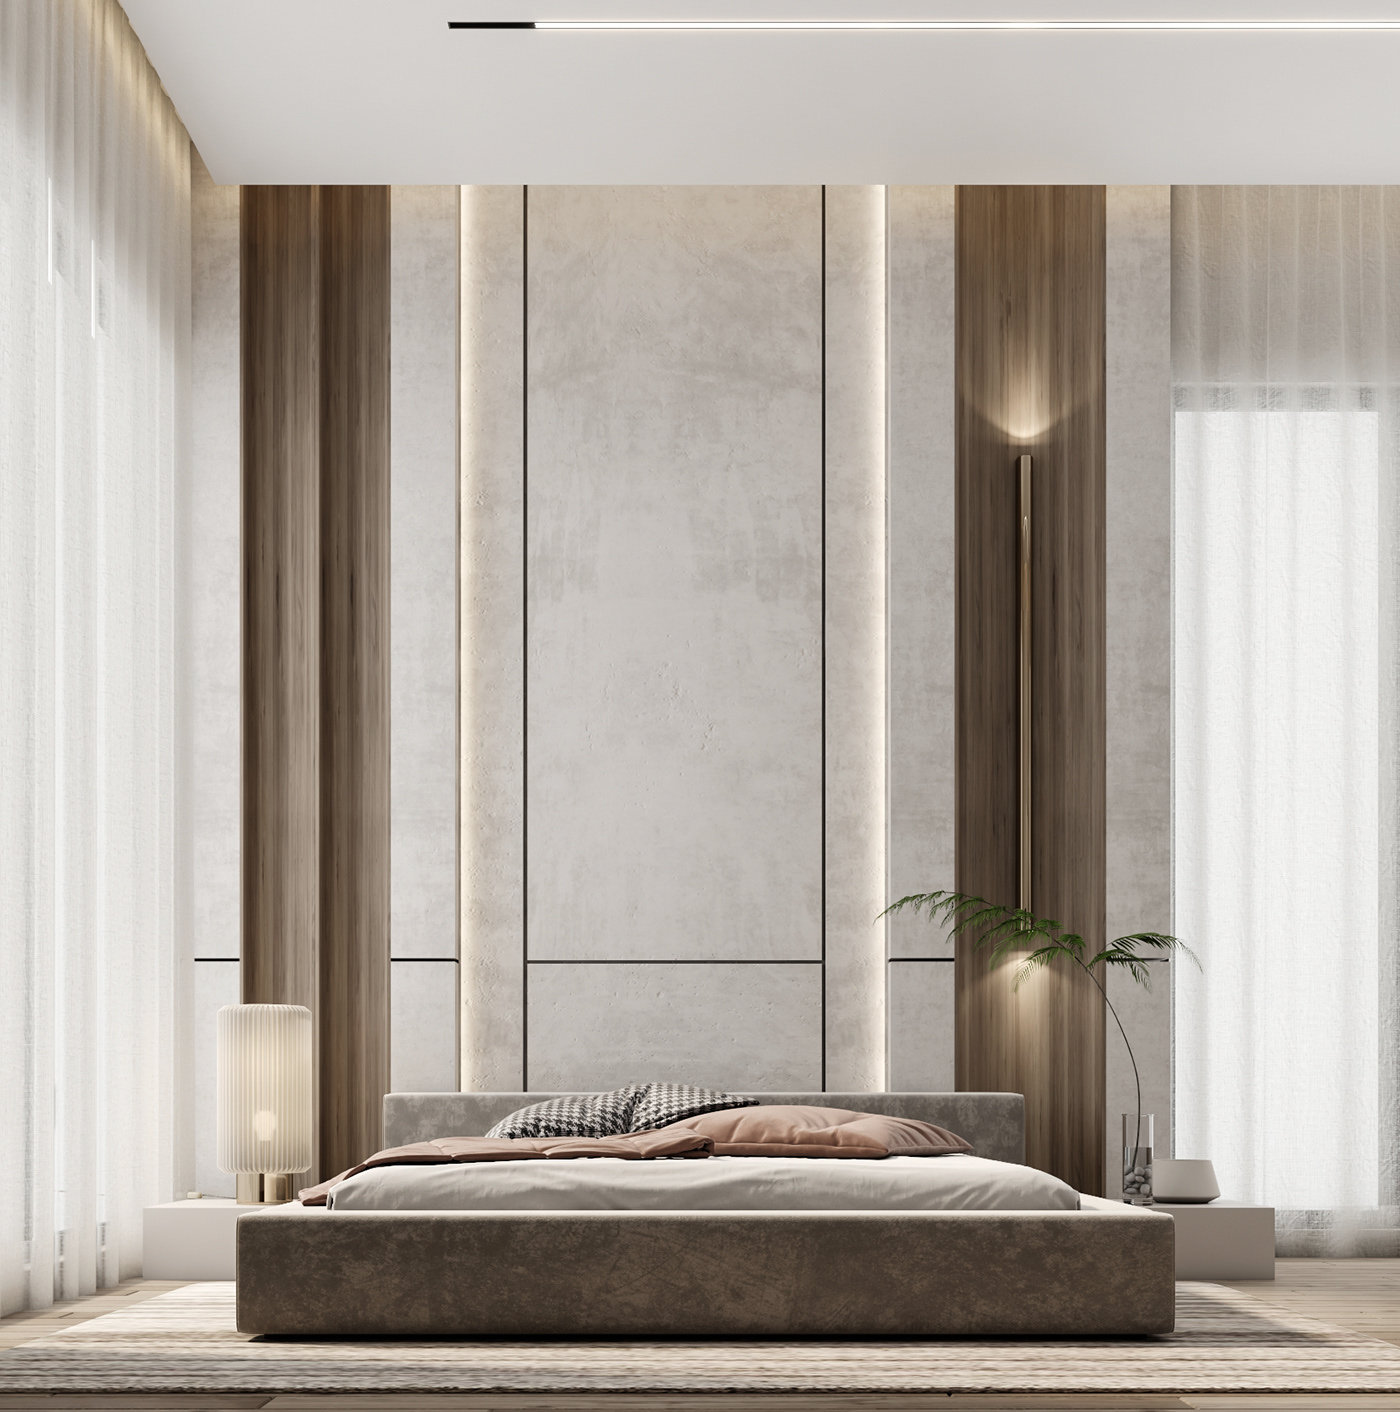 master bedroom interior design  3ds max vray visualization Render modern 3dmodeling